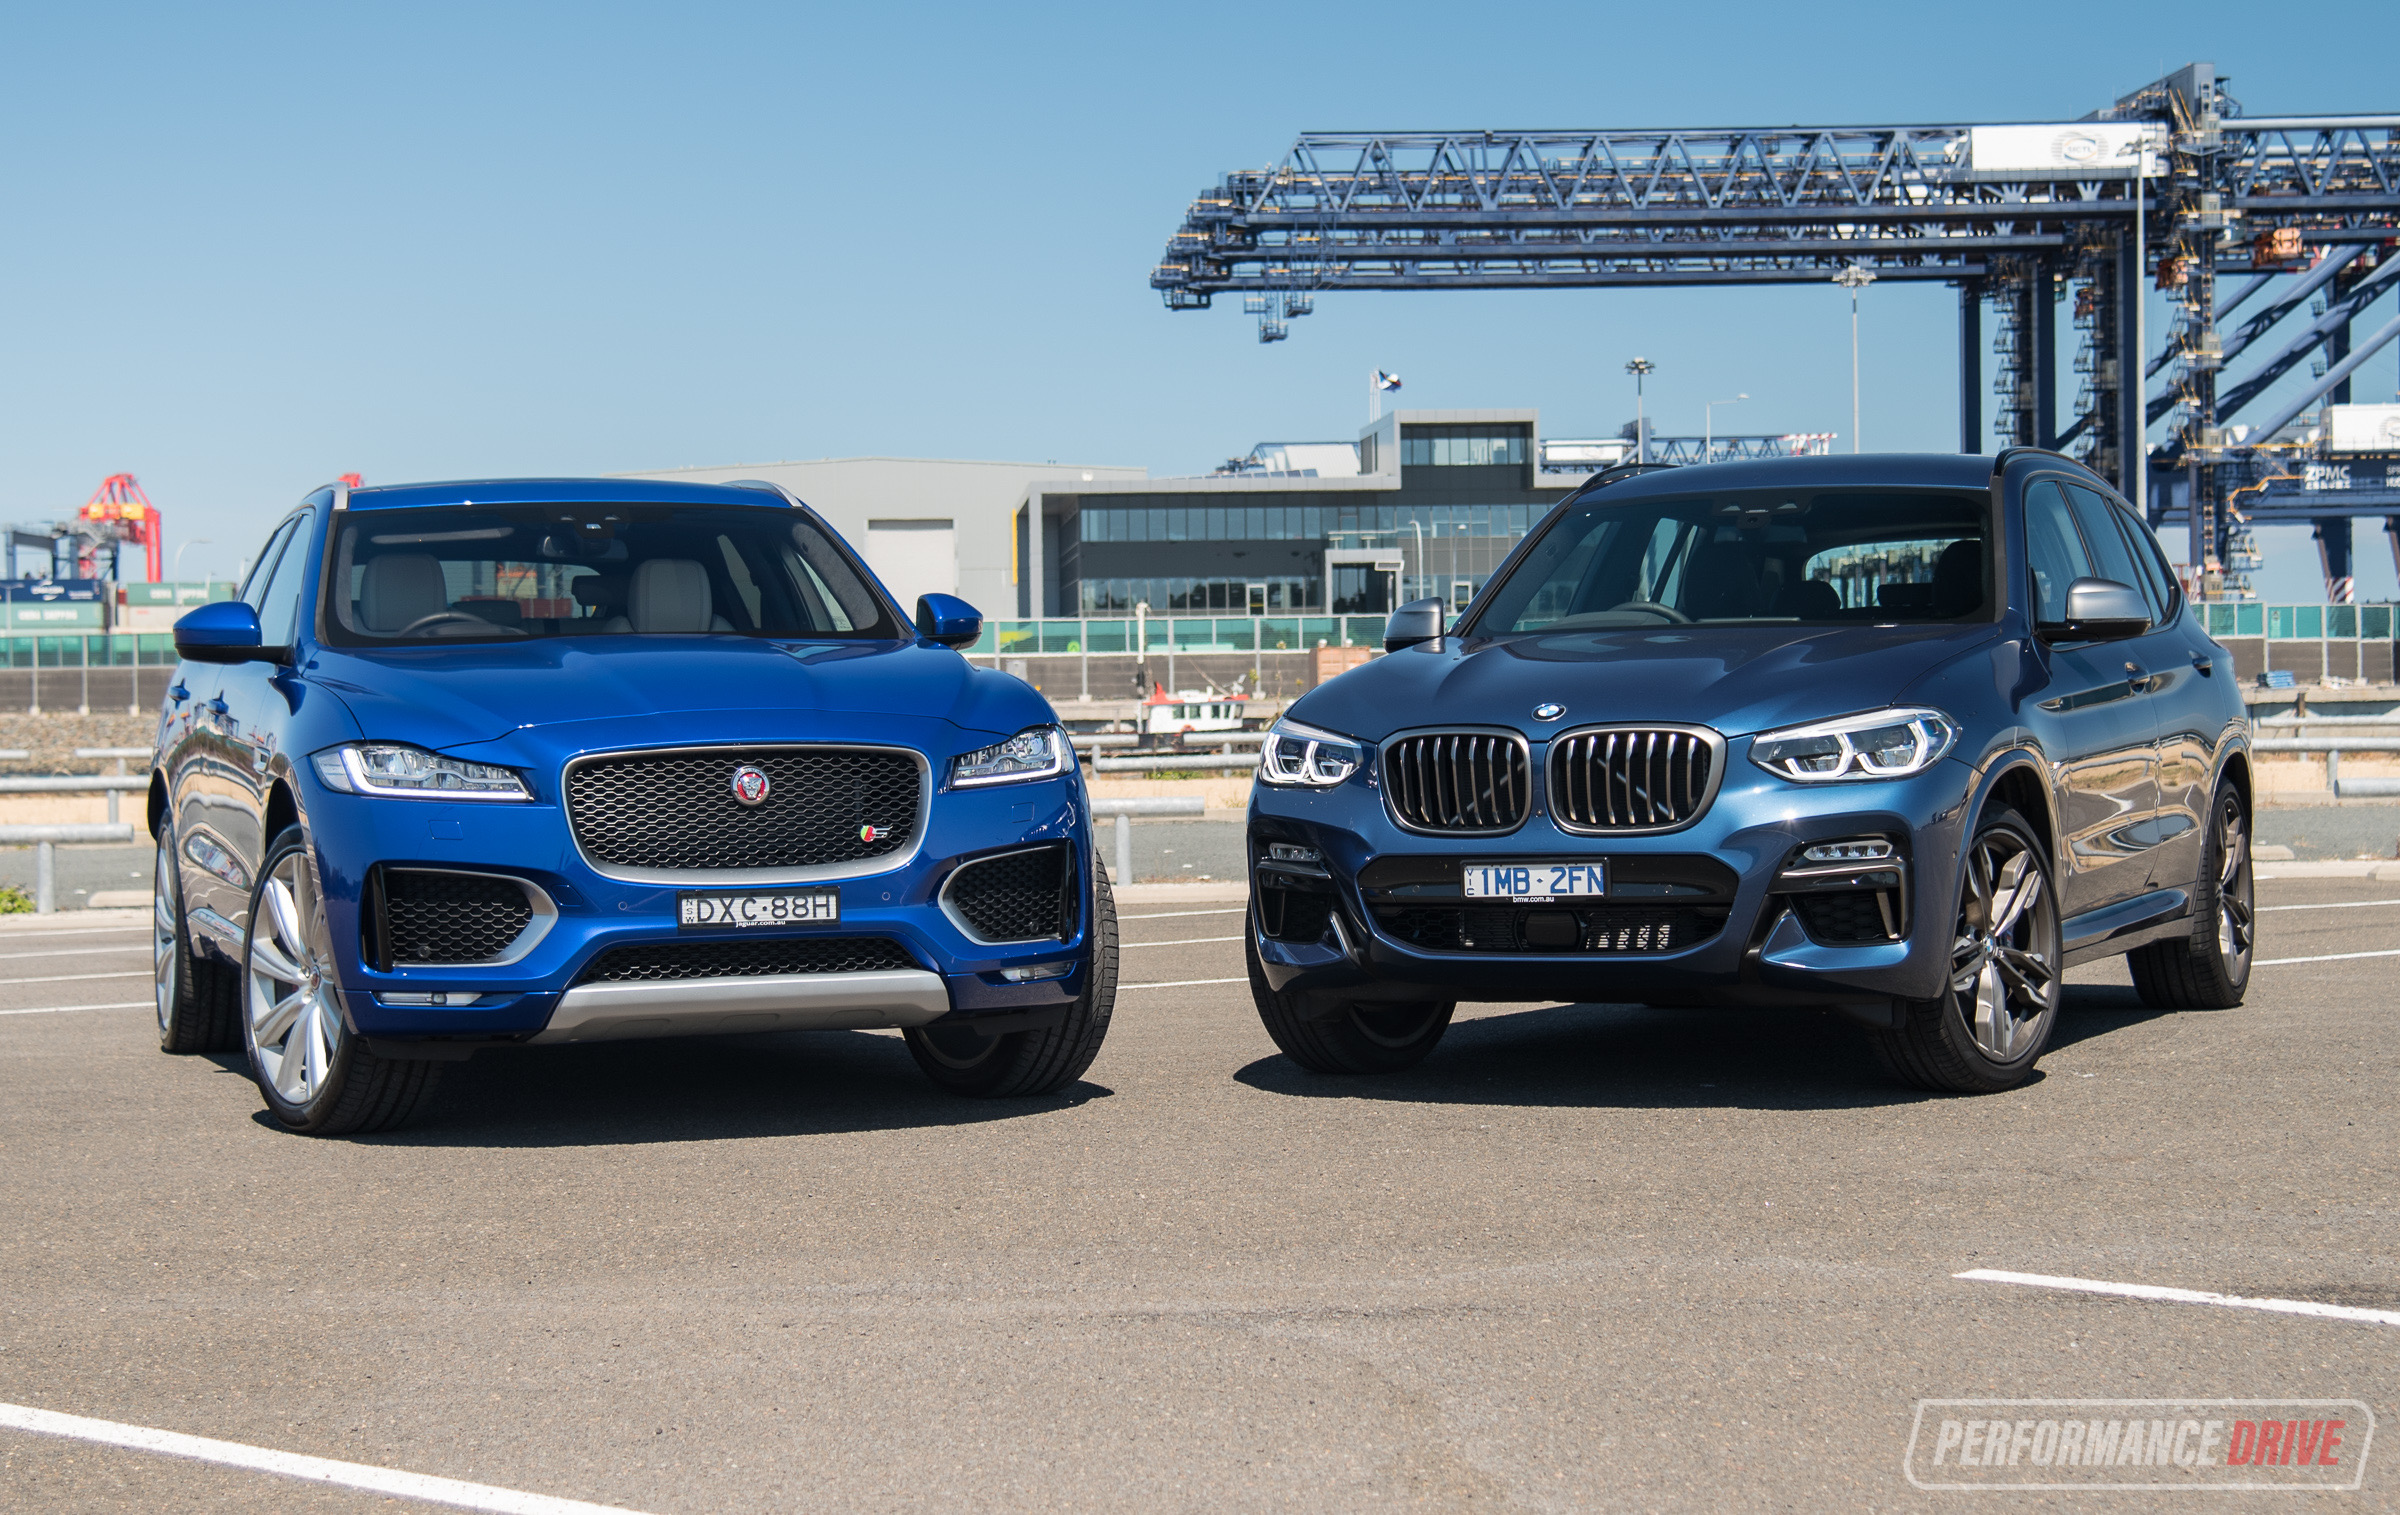 2018 Jaguar F-PACE S vs BMW X3 M40i: Performance SUV comparison (video)